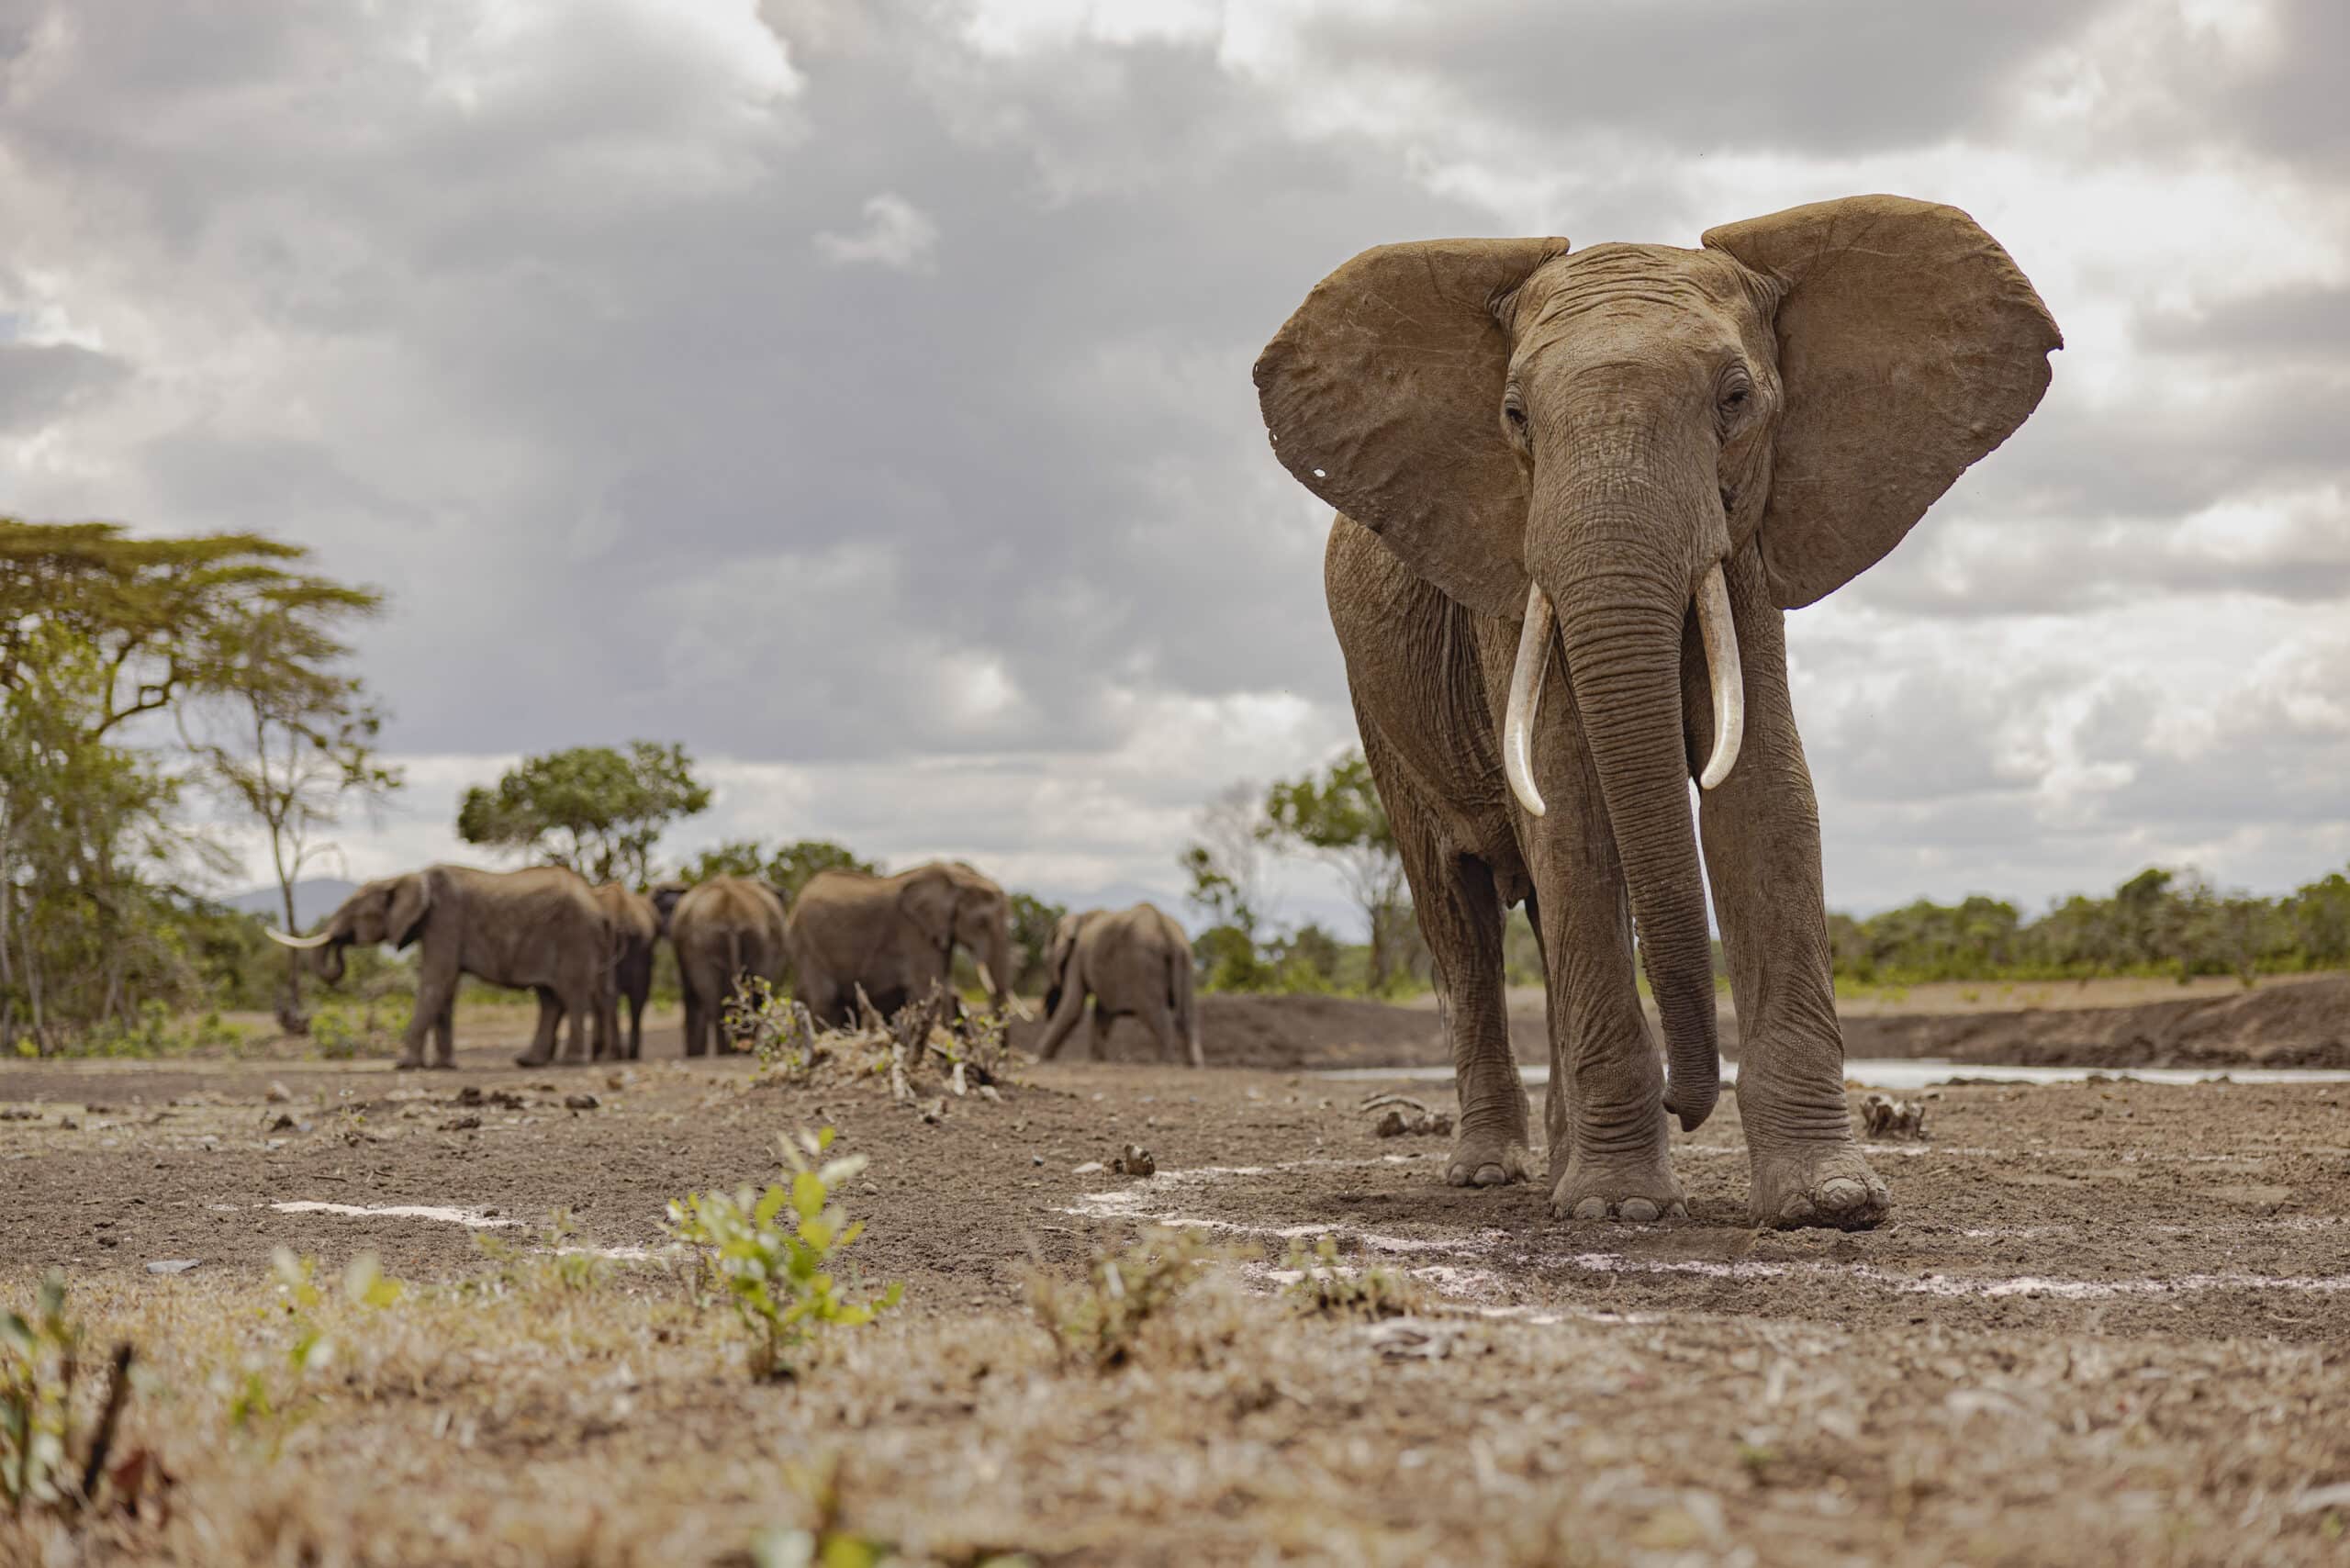 Im Vordergrund steht markant ein Elefant mit gespreizten Ohren und hervorstehenden Stoßzähnen auf staubigem Gelände. Im Hintergrund ist eine Elefantenherde unter einem bewölkten Himmel zu sehen. © Fotografie Tomas Rodriguez